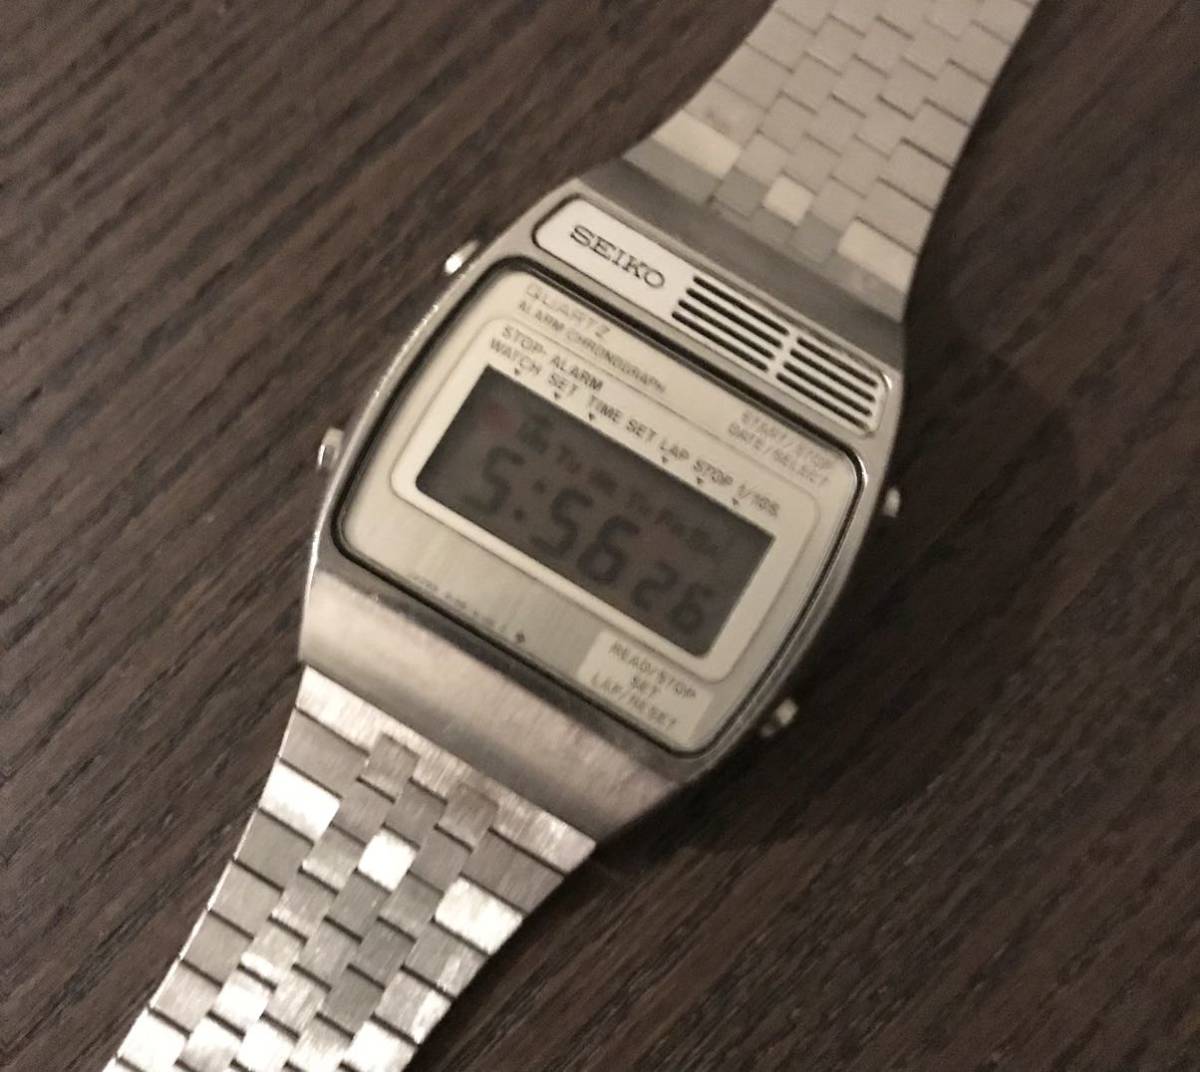 Seiko Digital Quartz アラーム クロノグラフ A159-4000 1977年製 稼働品 セイコー デジタル クォーツ 腕時計 希少品 _画像2